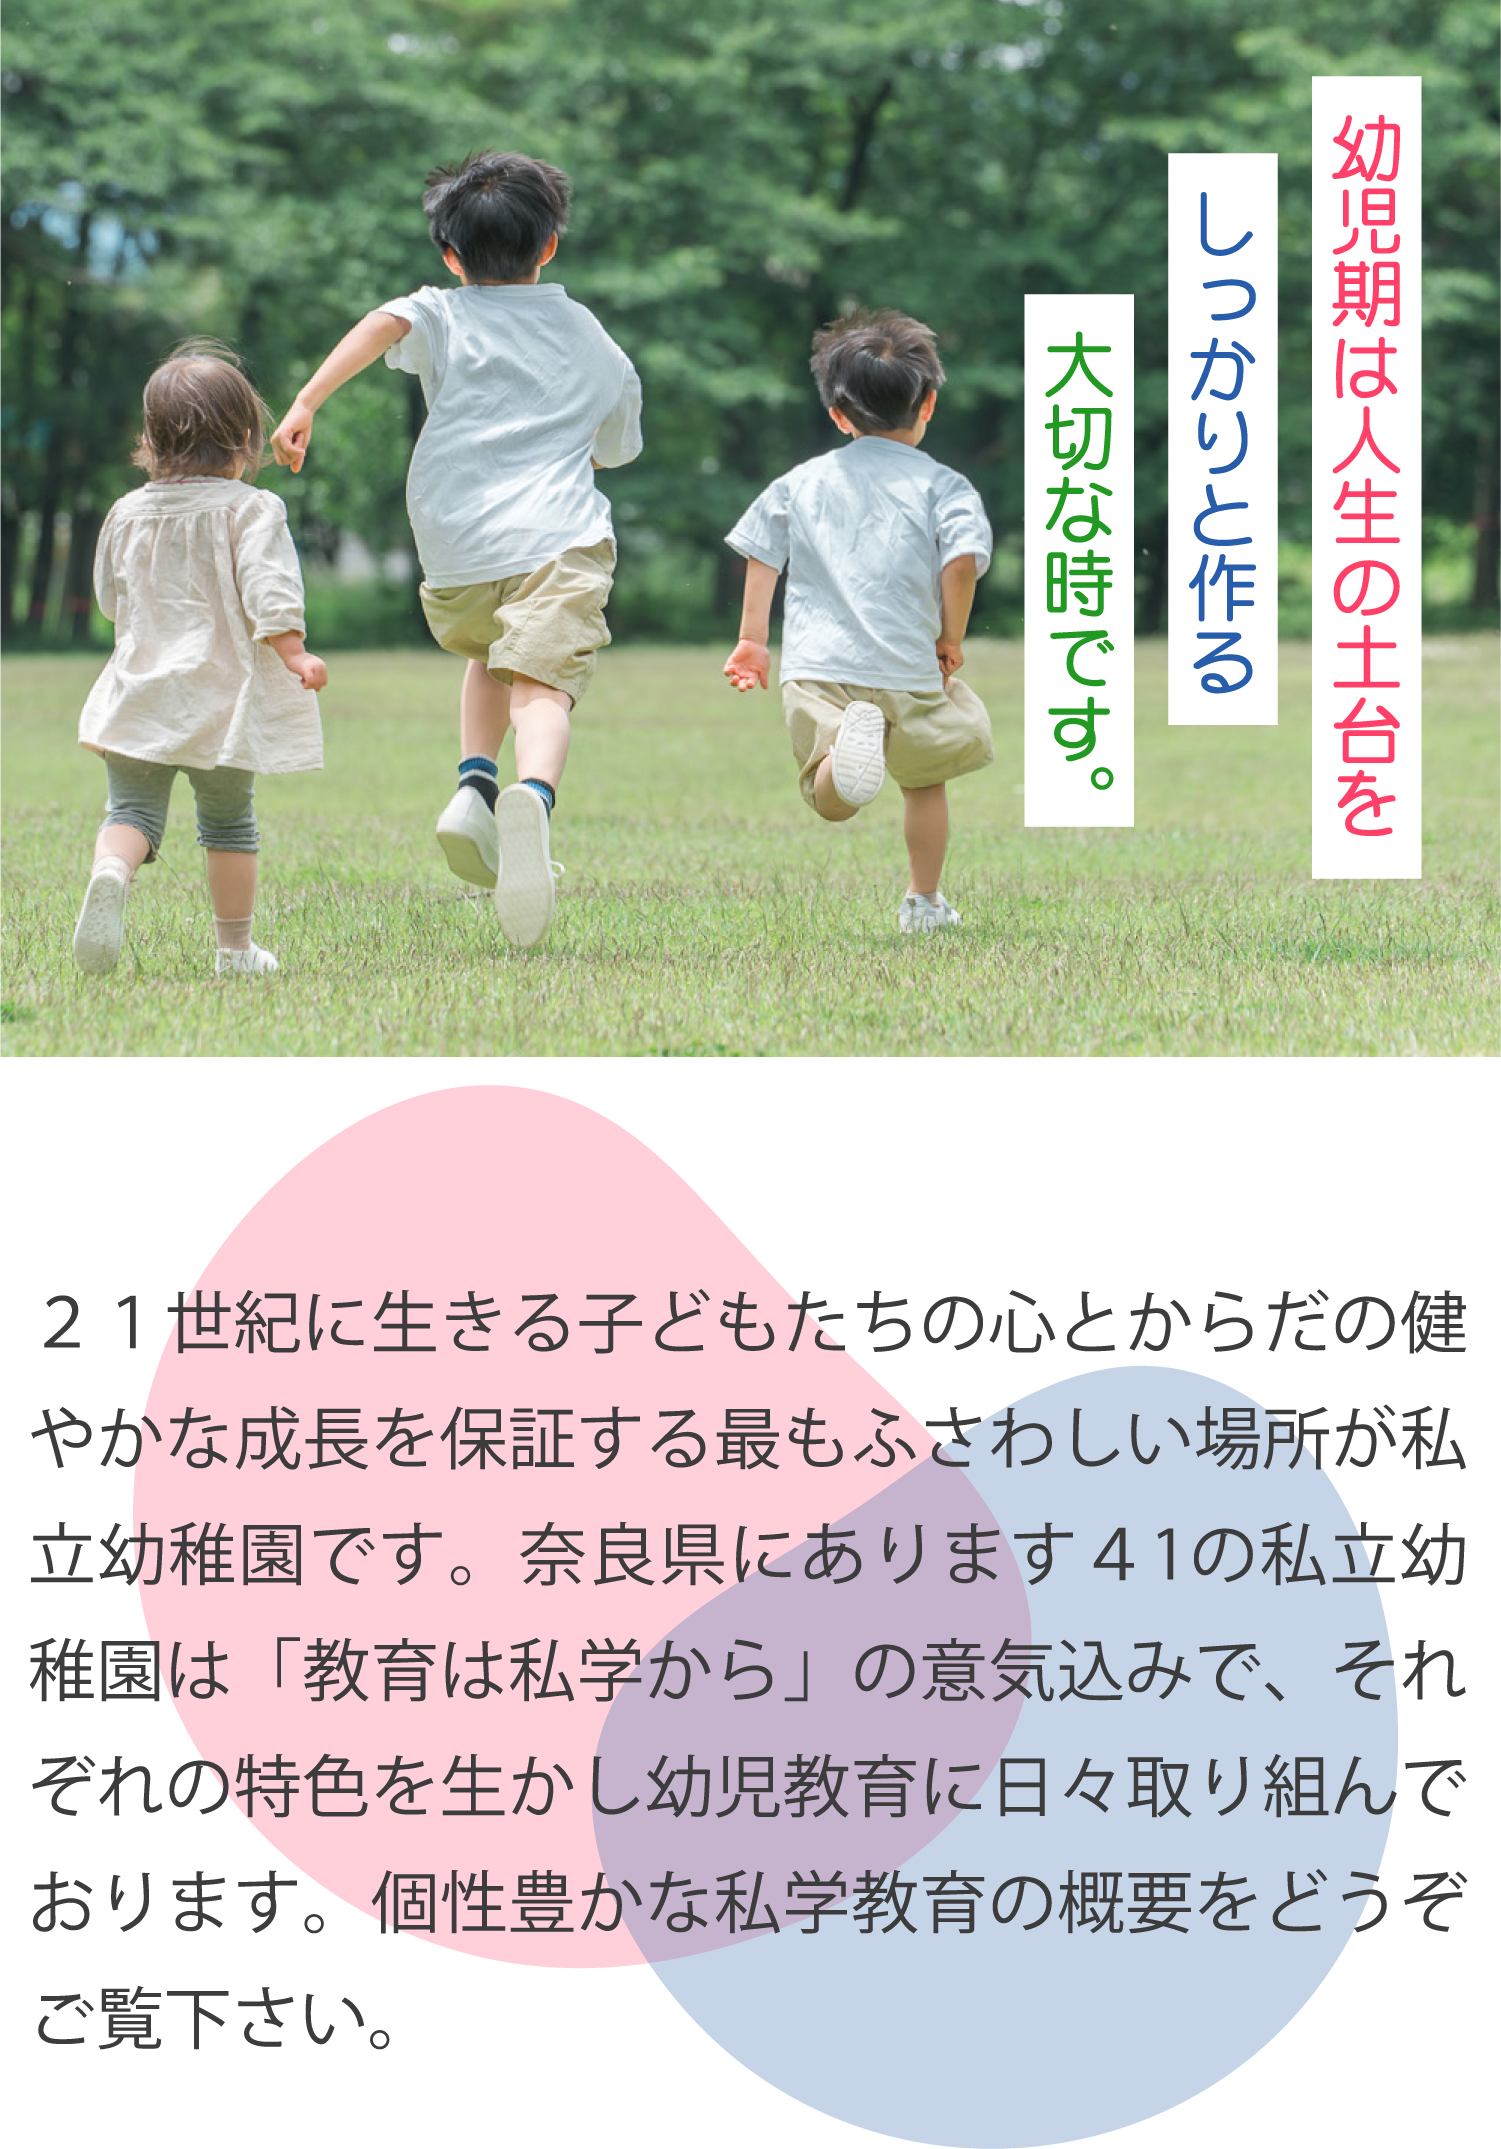 奈良県私立幼稚園連合会